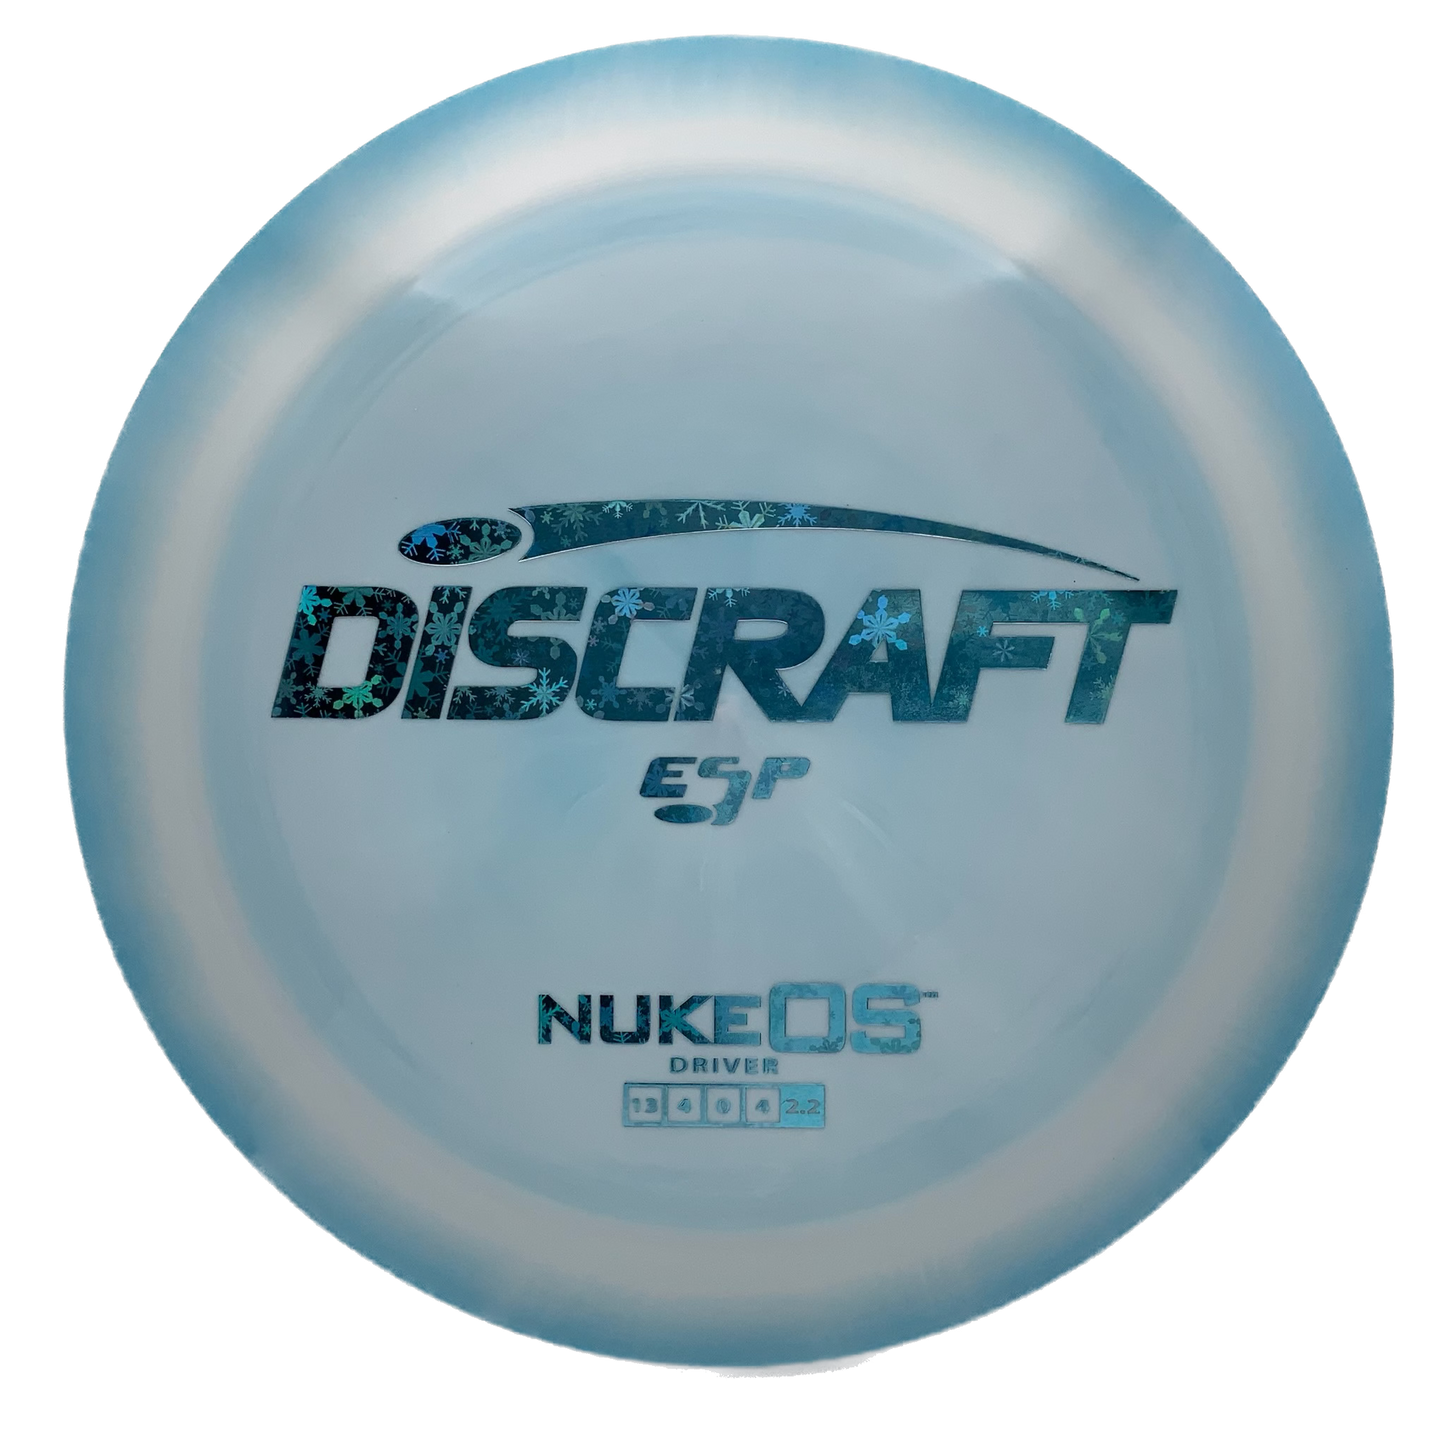 Discraft Nuke OS - Astro Discs TX - Houston Disc Golf